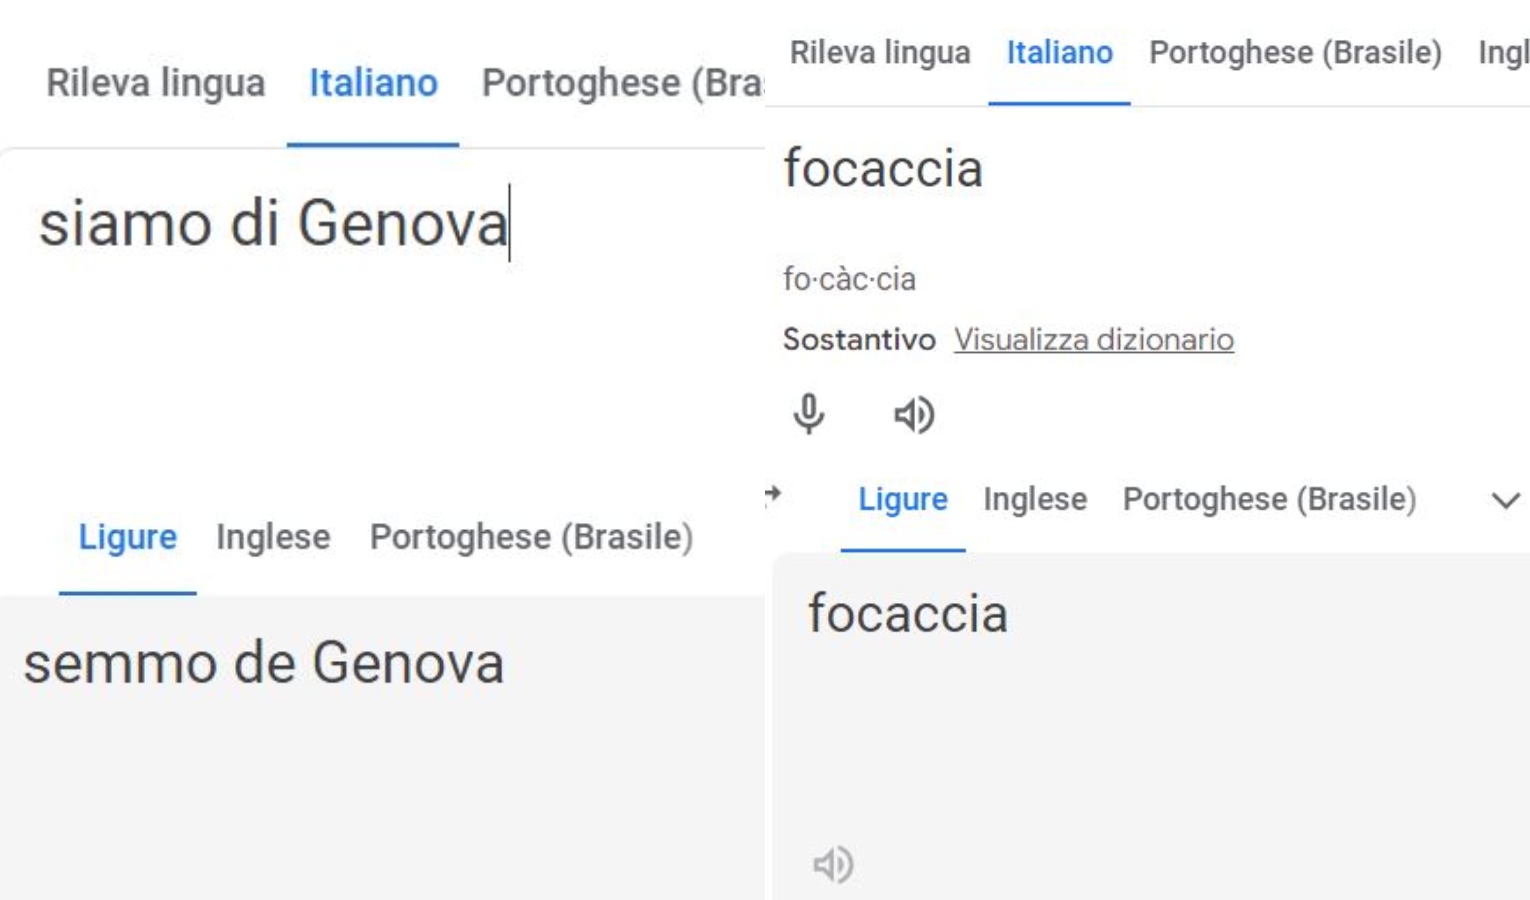 Lingua Ligure su Google Translate ma ci sono molti errori: in arrivo interrogazione in Consiglio Regionale